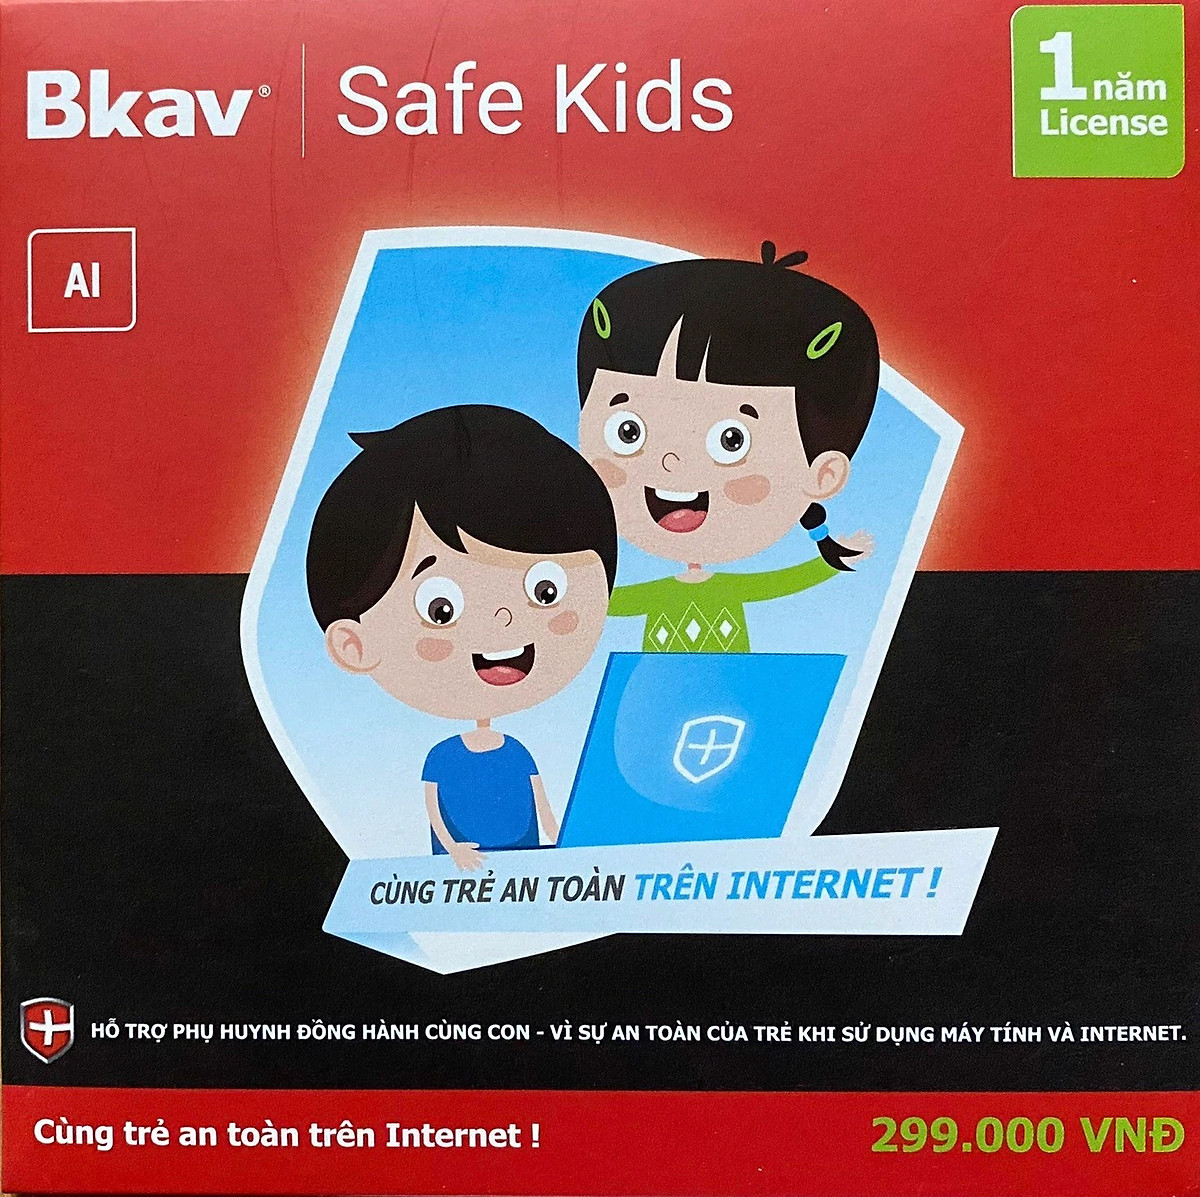 Phần mềm giám sát, bảo vệ trẻ em - Bkav Safe Kids - Hàng chính hãng